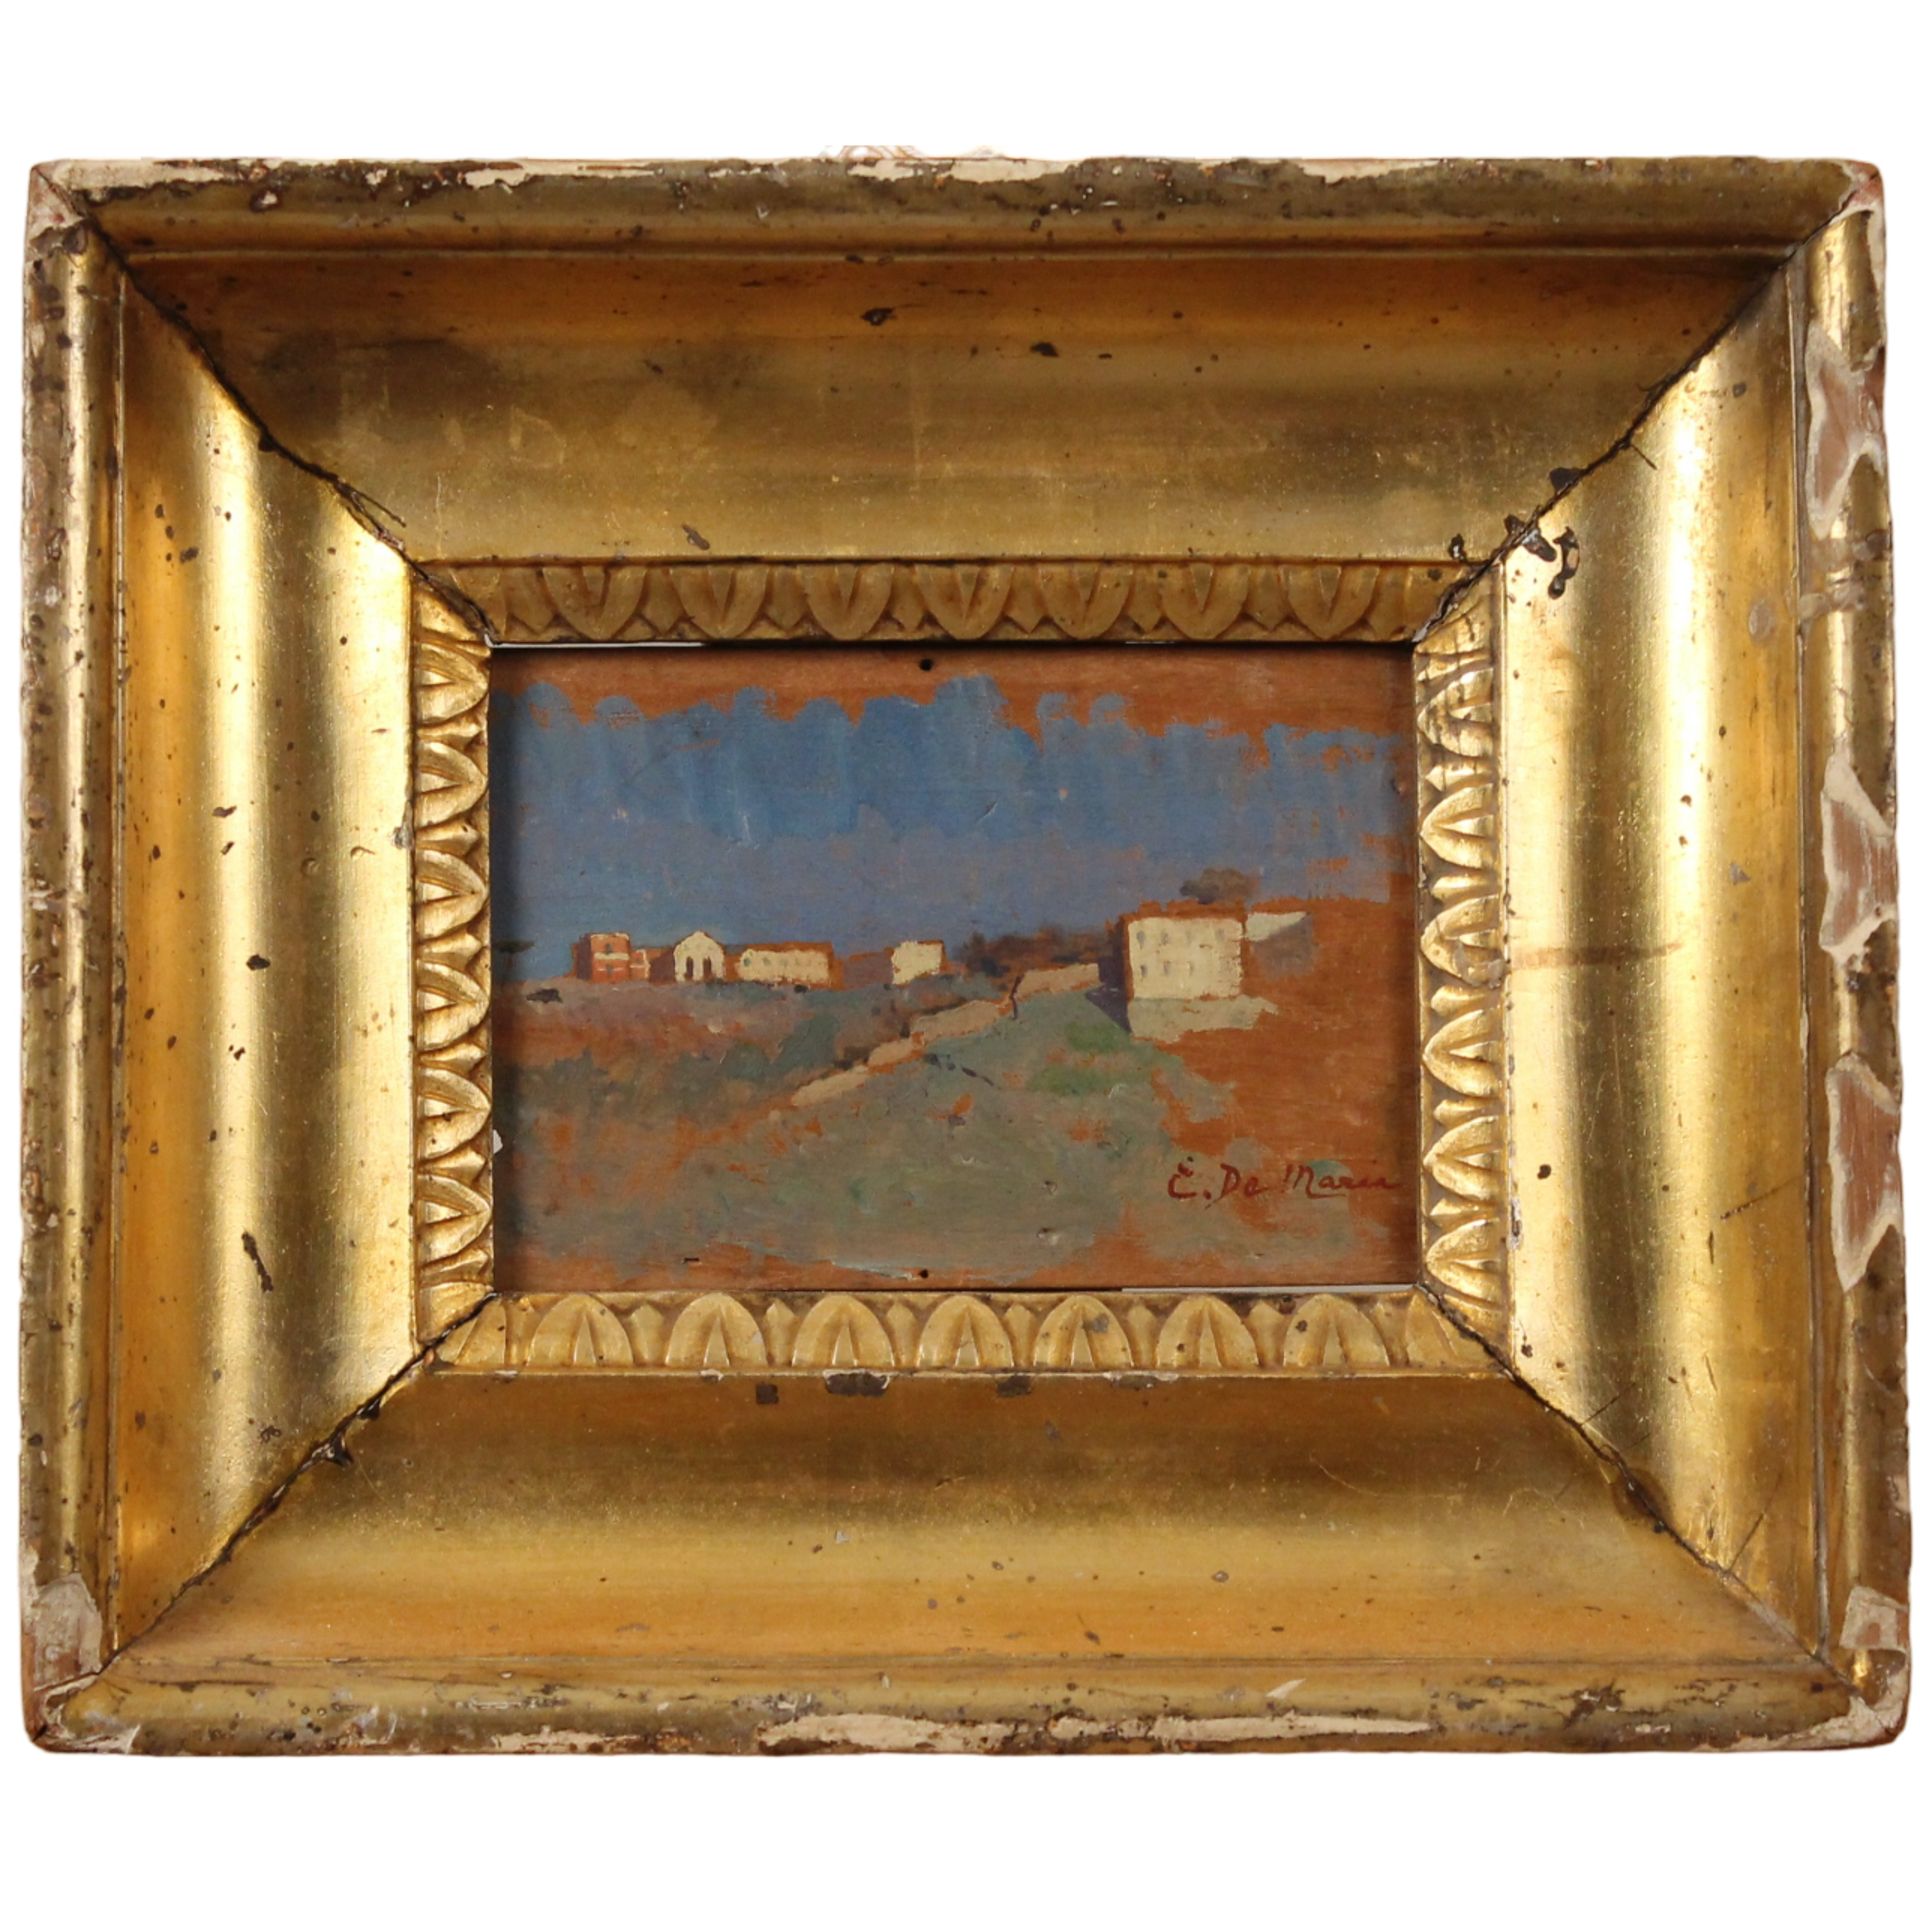 Ettore De Maria Bergler (1850/1938) "Paesaggio con casolari sullo sfondo" - "Landscape with farmhous